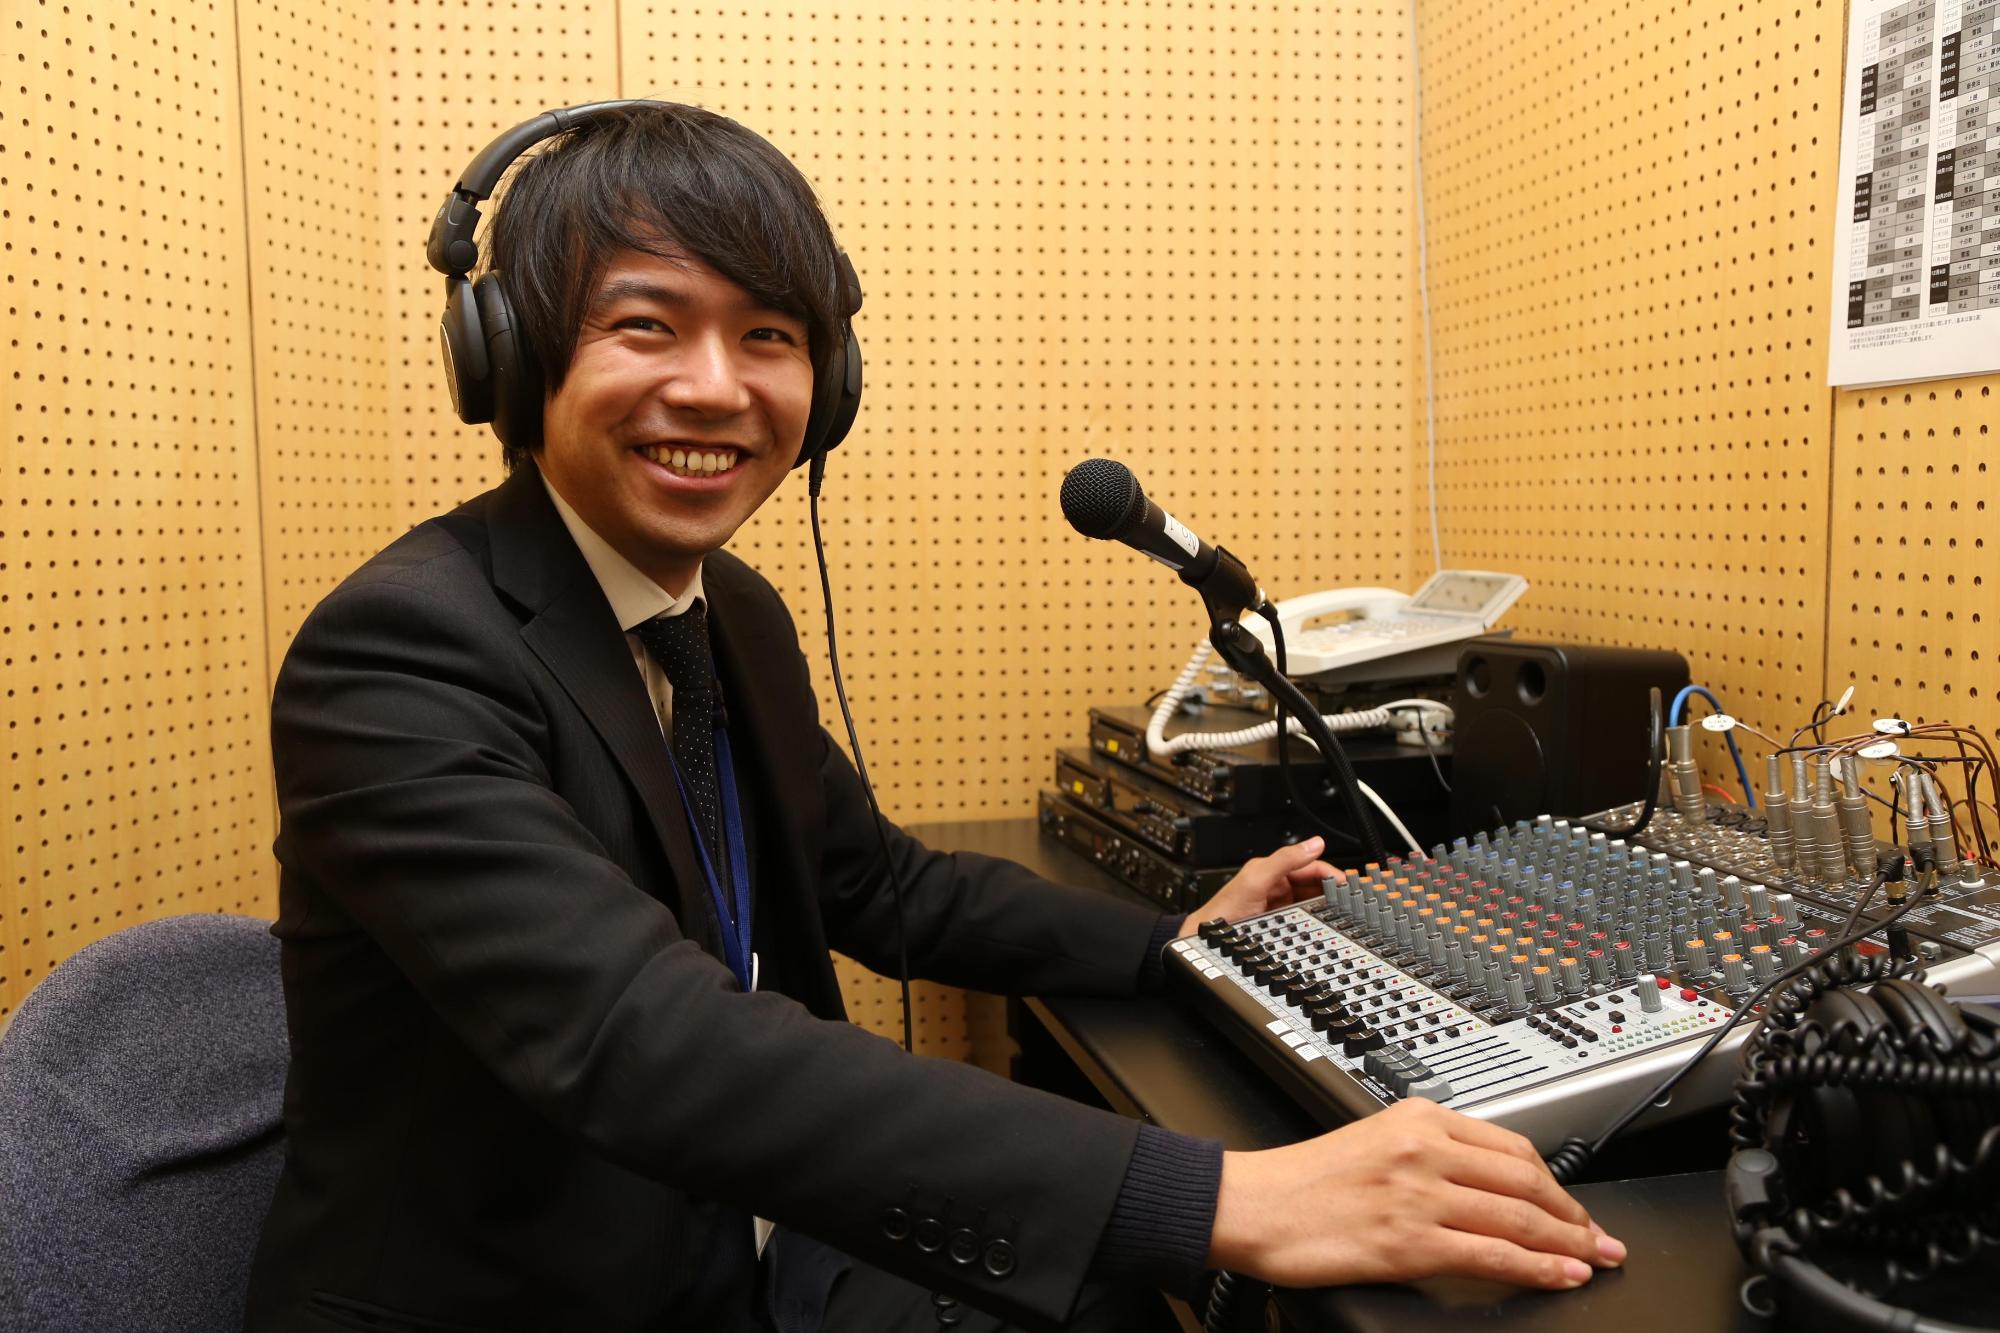 ラジオ局で、株式会社エフエムとおかまちに勤務する樋口智史さんがヘッドホンを付け、笑顔で写っている写真